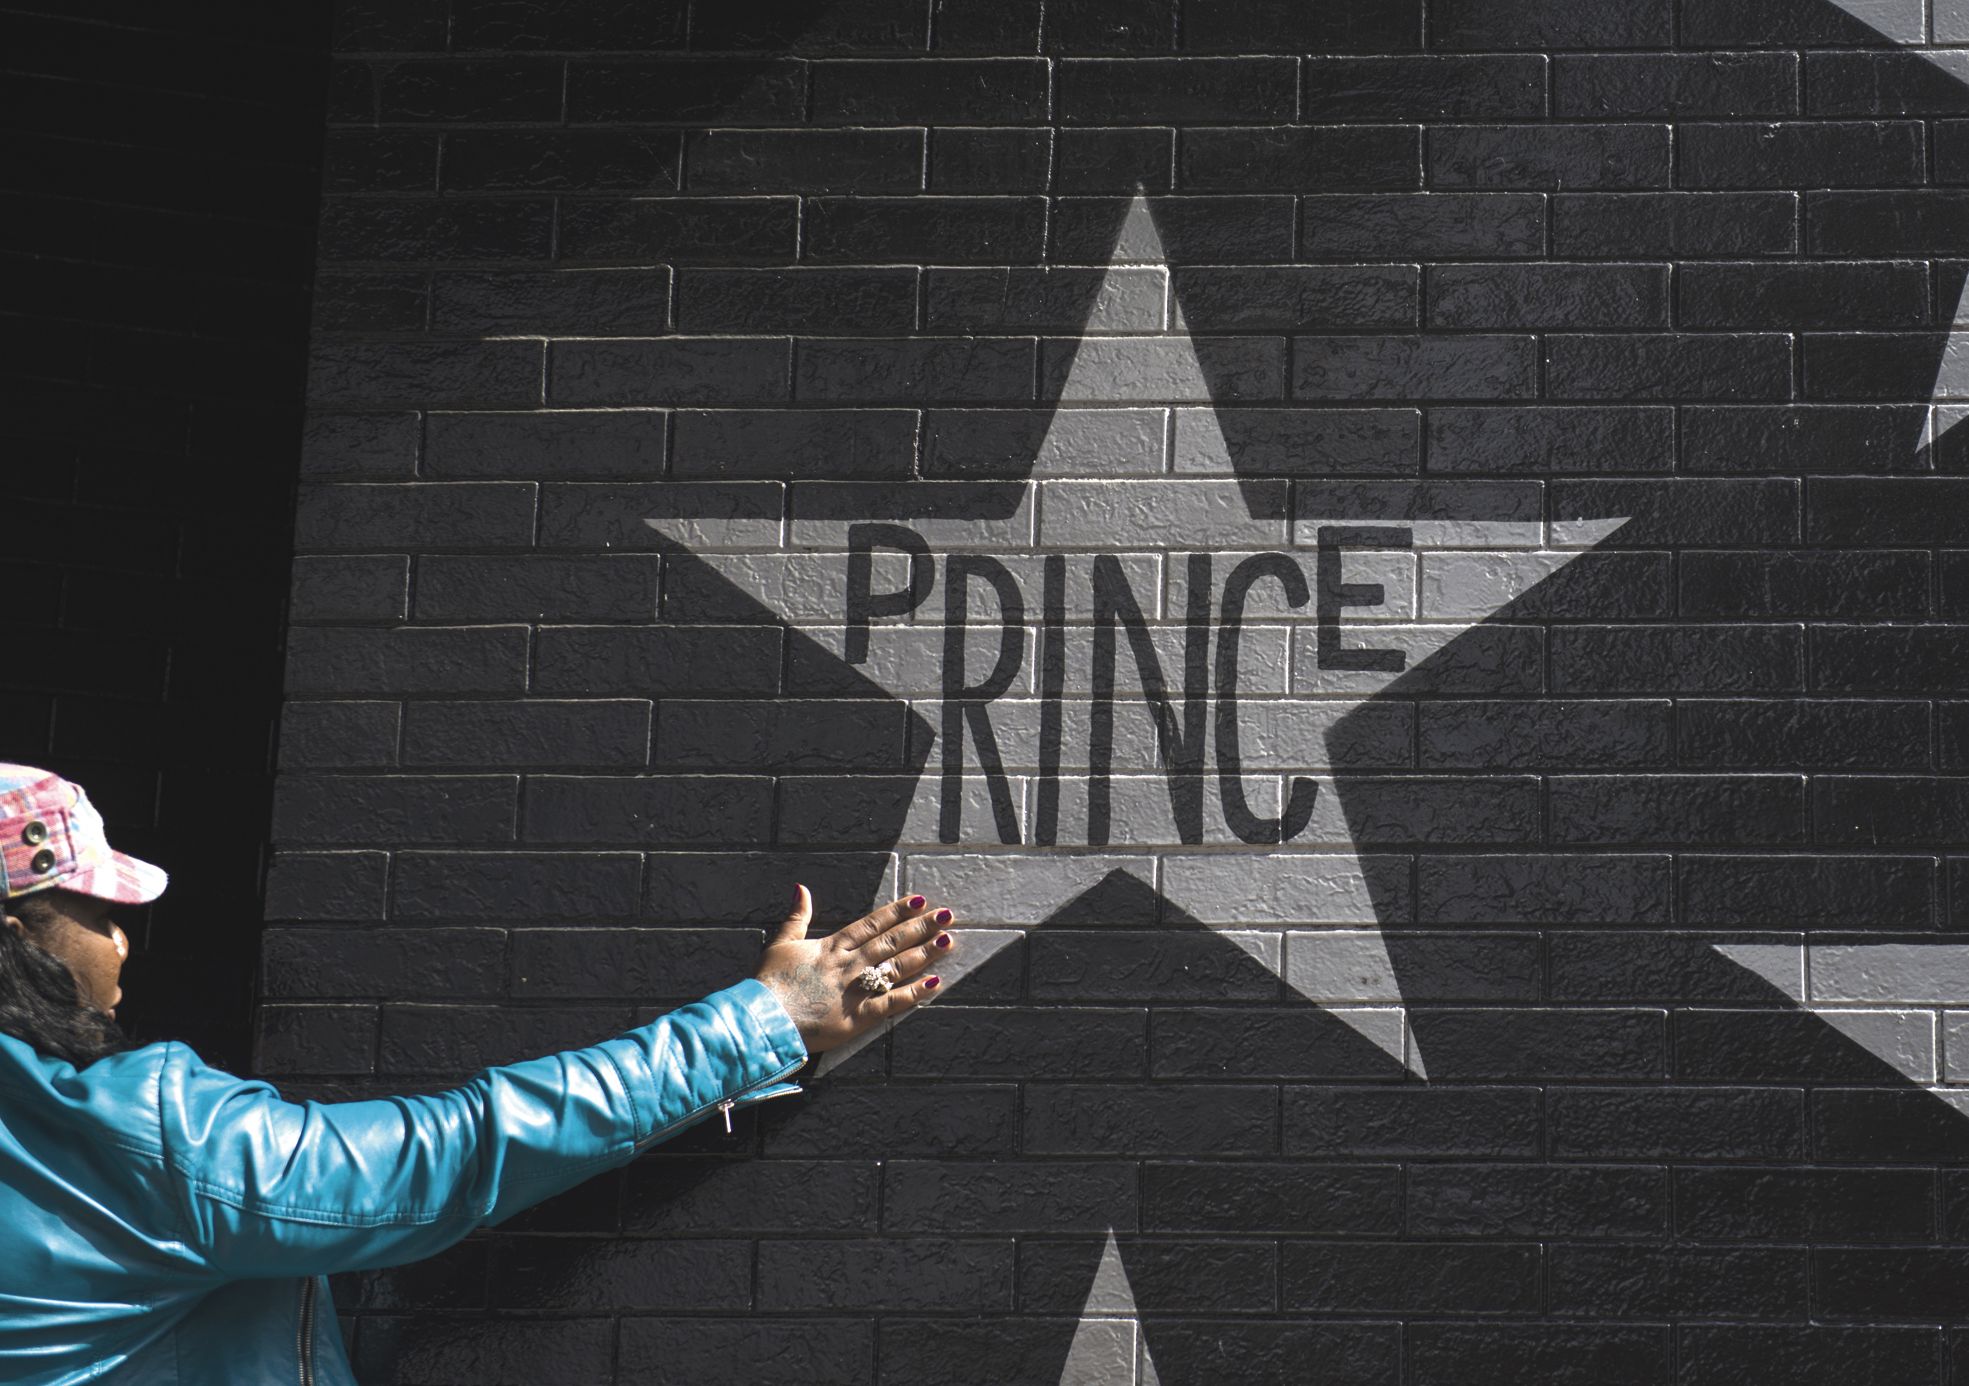 Minneapolis, le 21 avril. Des fans lui ont rendu hommage sous l’étoile qui porte son nom sur le mur d’un nightclub.